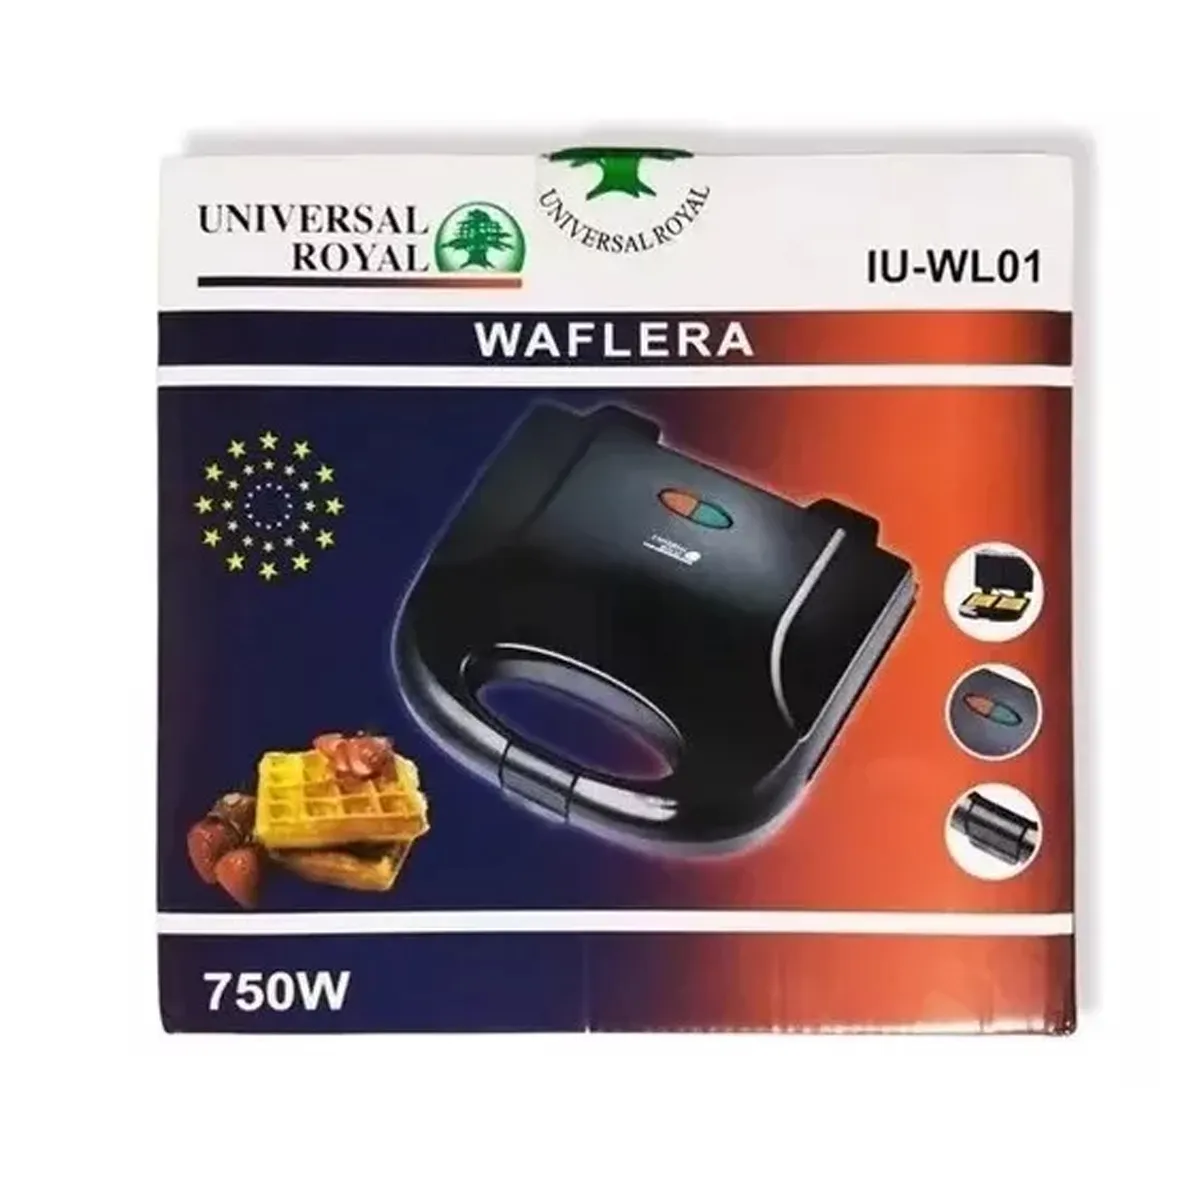 Waflera Eléctrica 2 Puestos Universal Royal